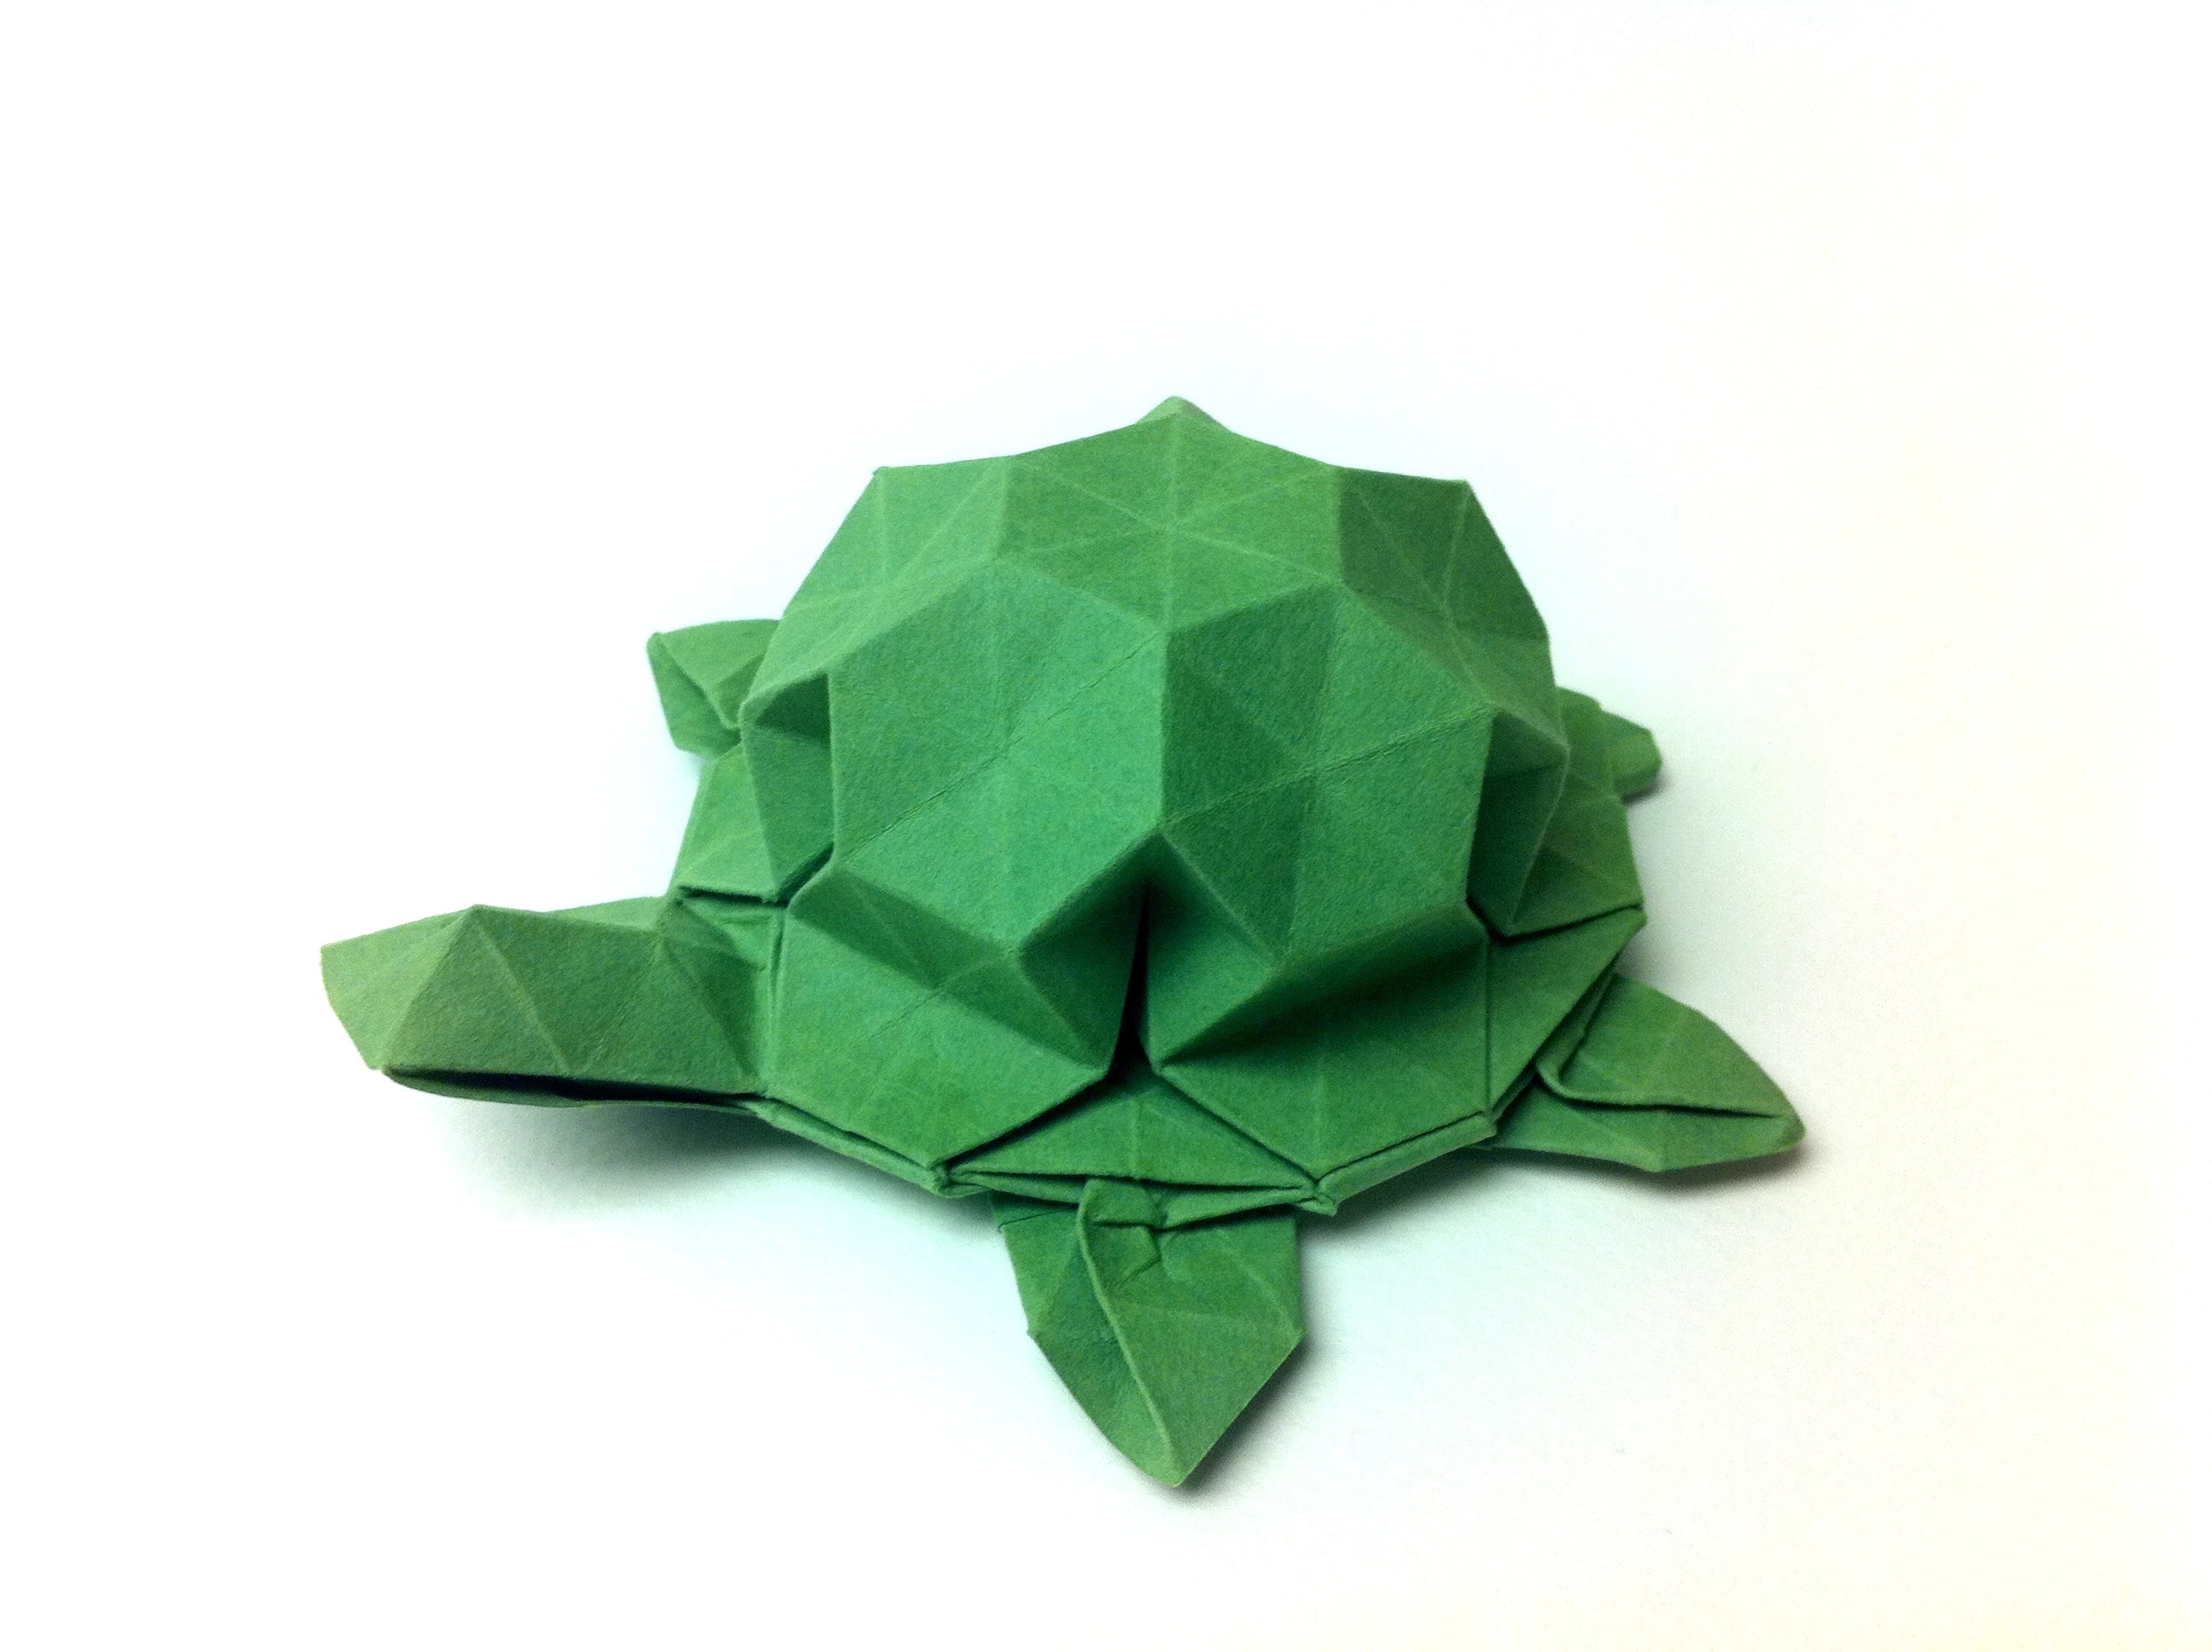 turtle origami